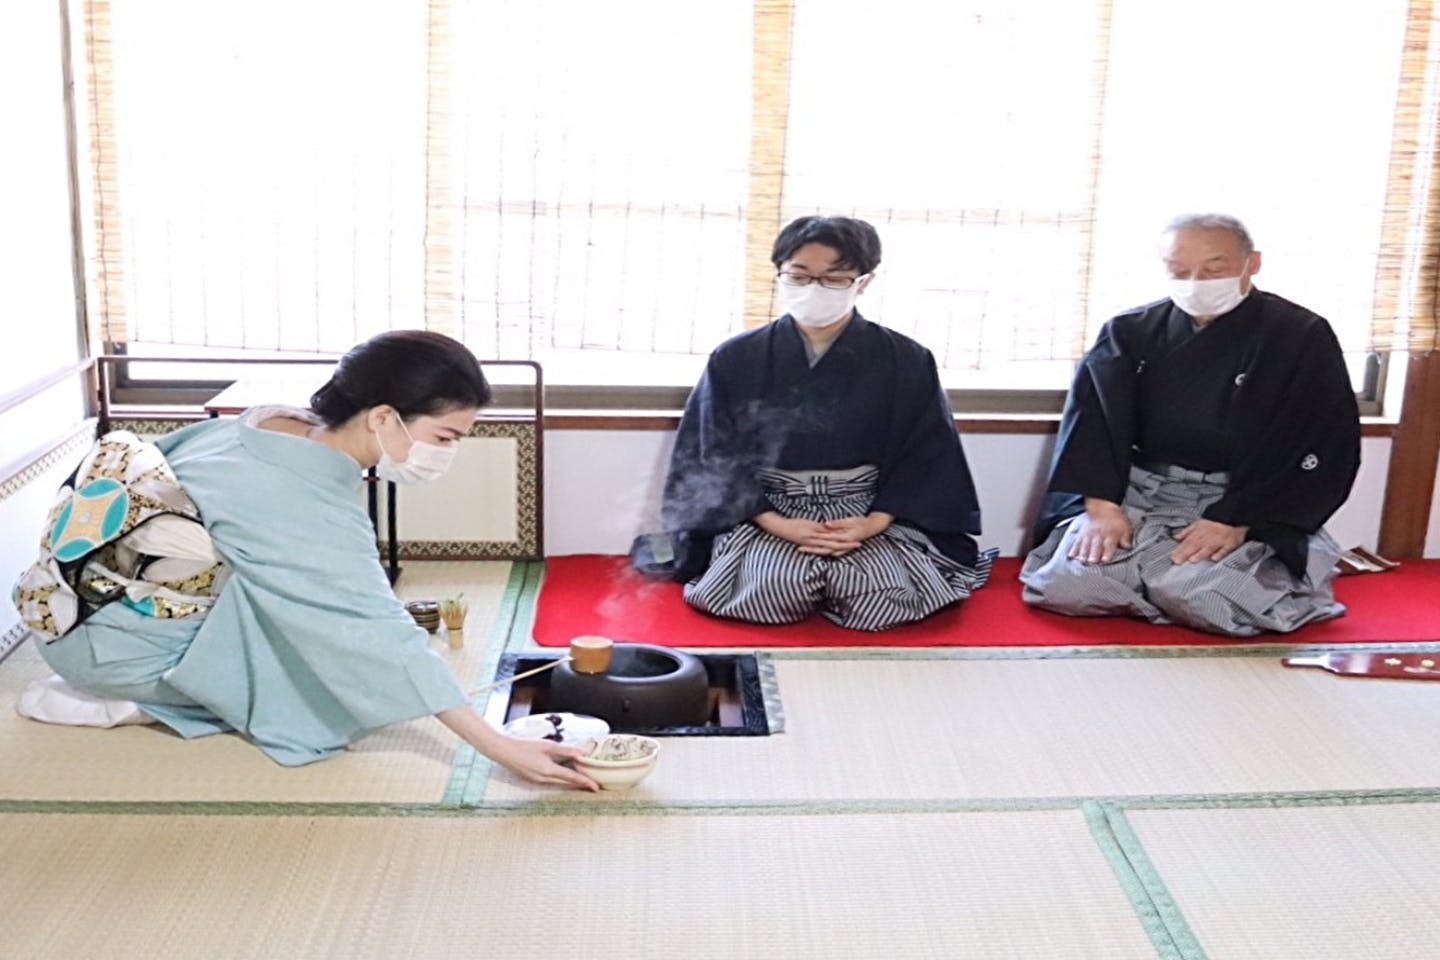 【大阪府・大阪市・茶道体験】日本文化教室 資格のある茶道家による稽古